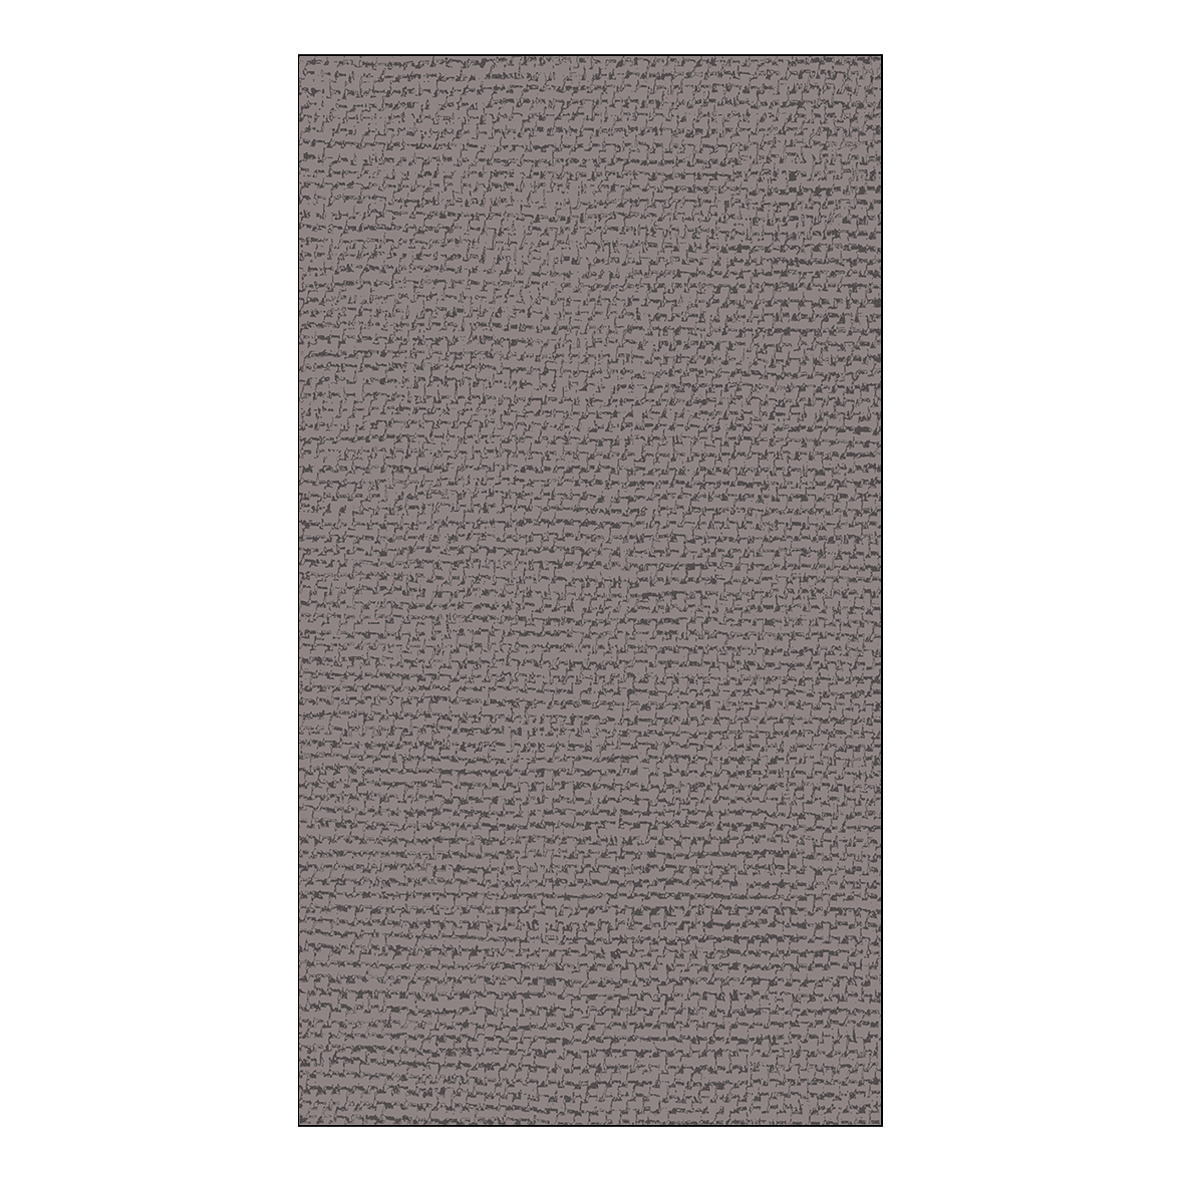 Ręcznik dla gości - Canvas gray GuestTowels 33x40